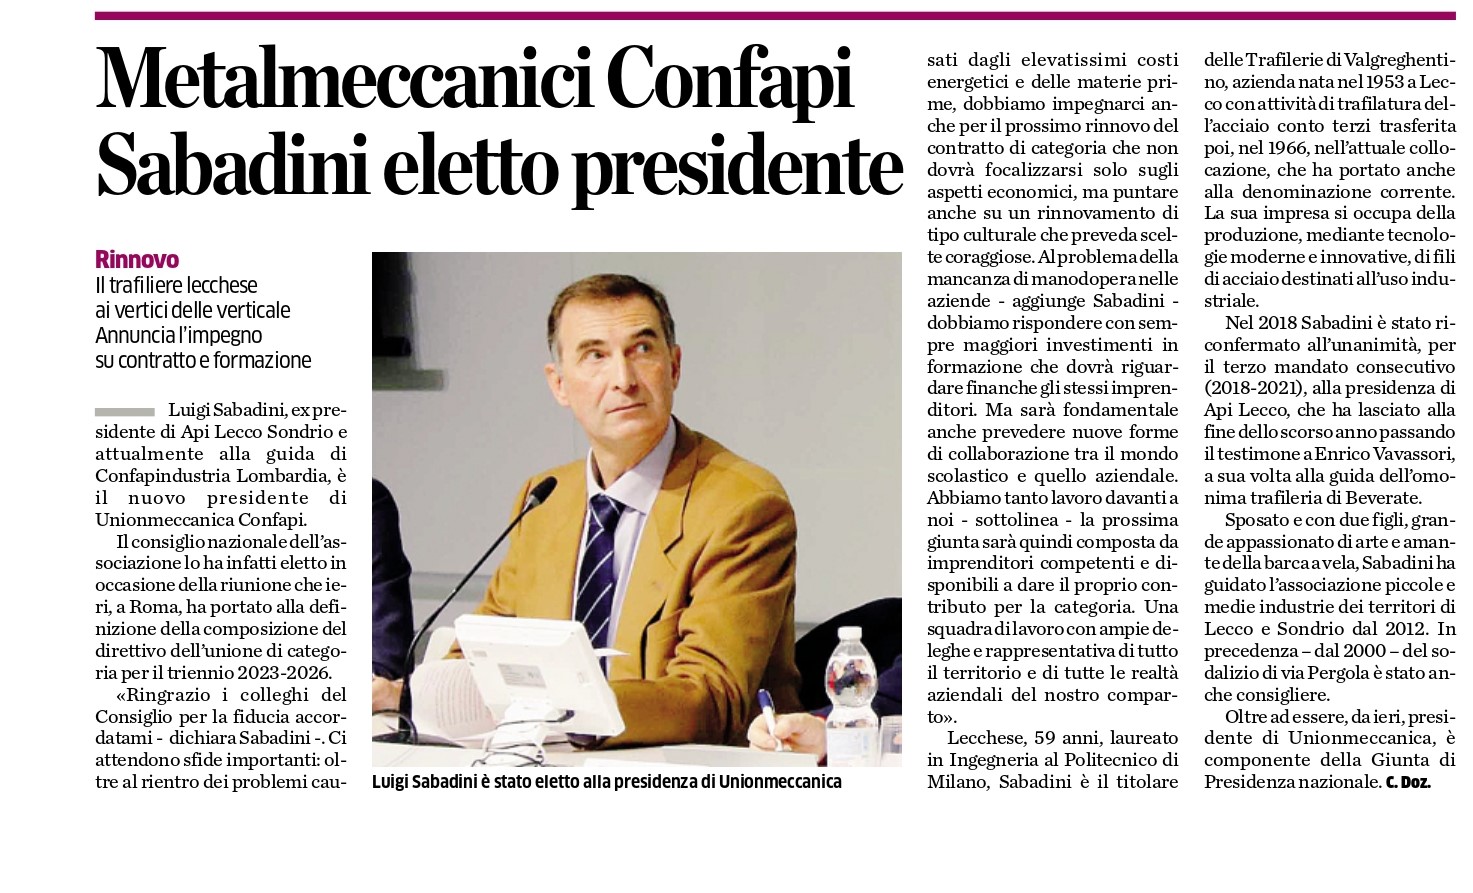 Sabadini presidente Unionmeccanica: rassegna stampa